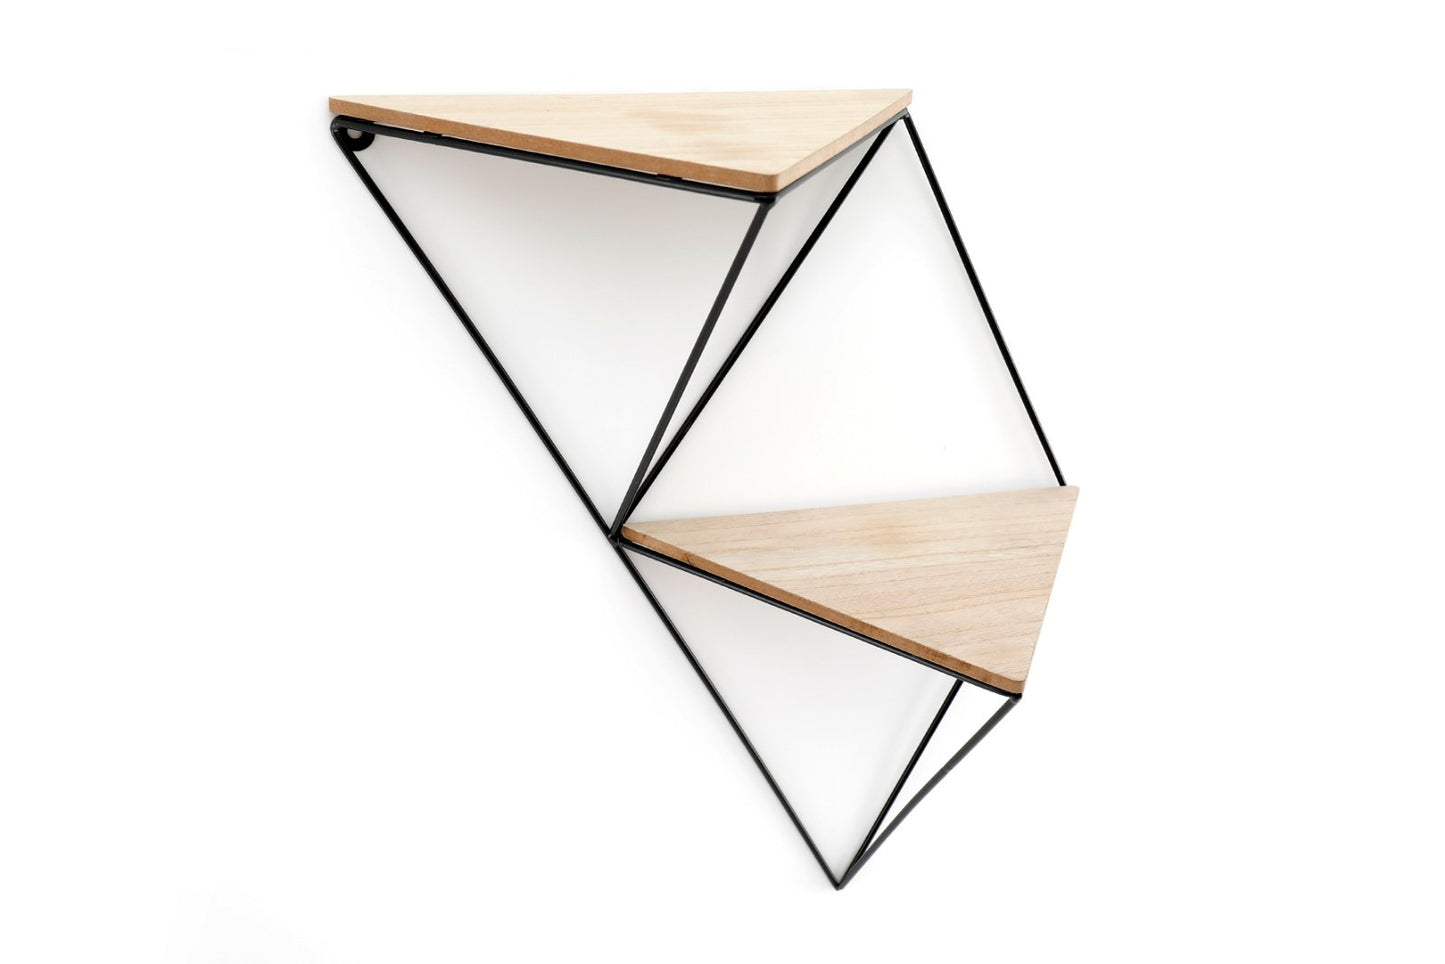 Double Triangular Shelf 47cm